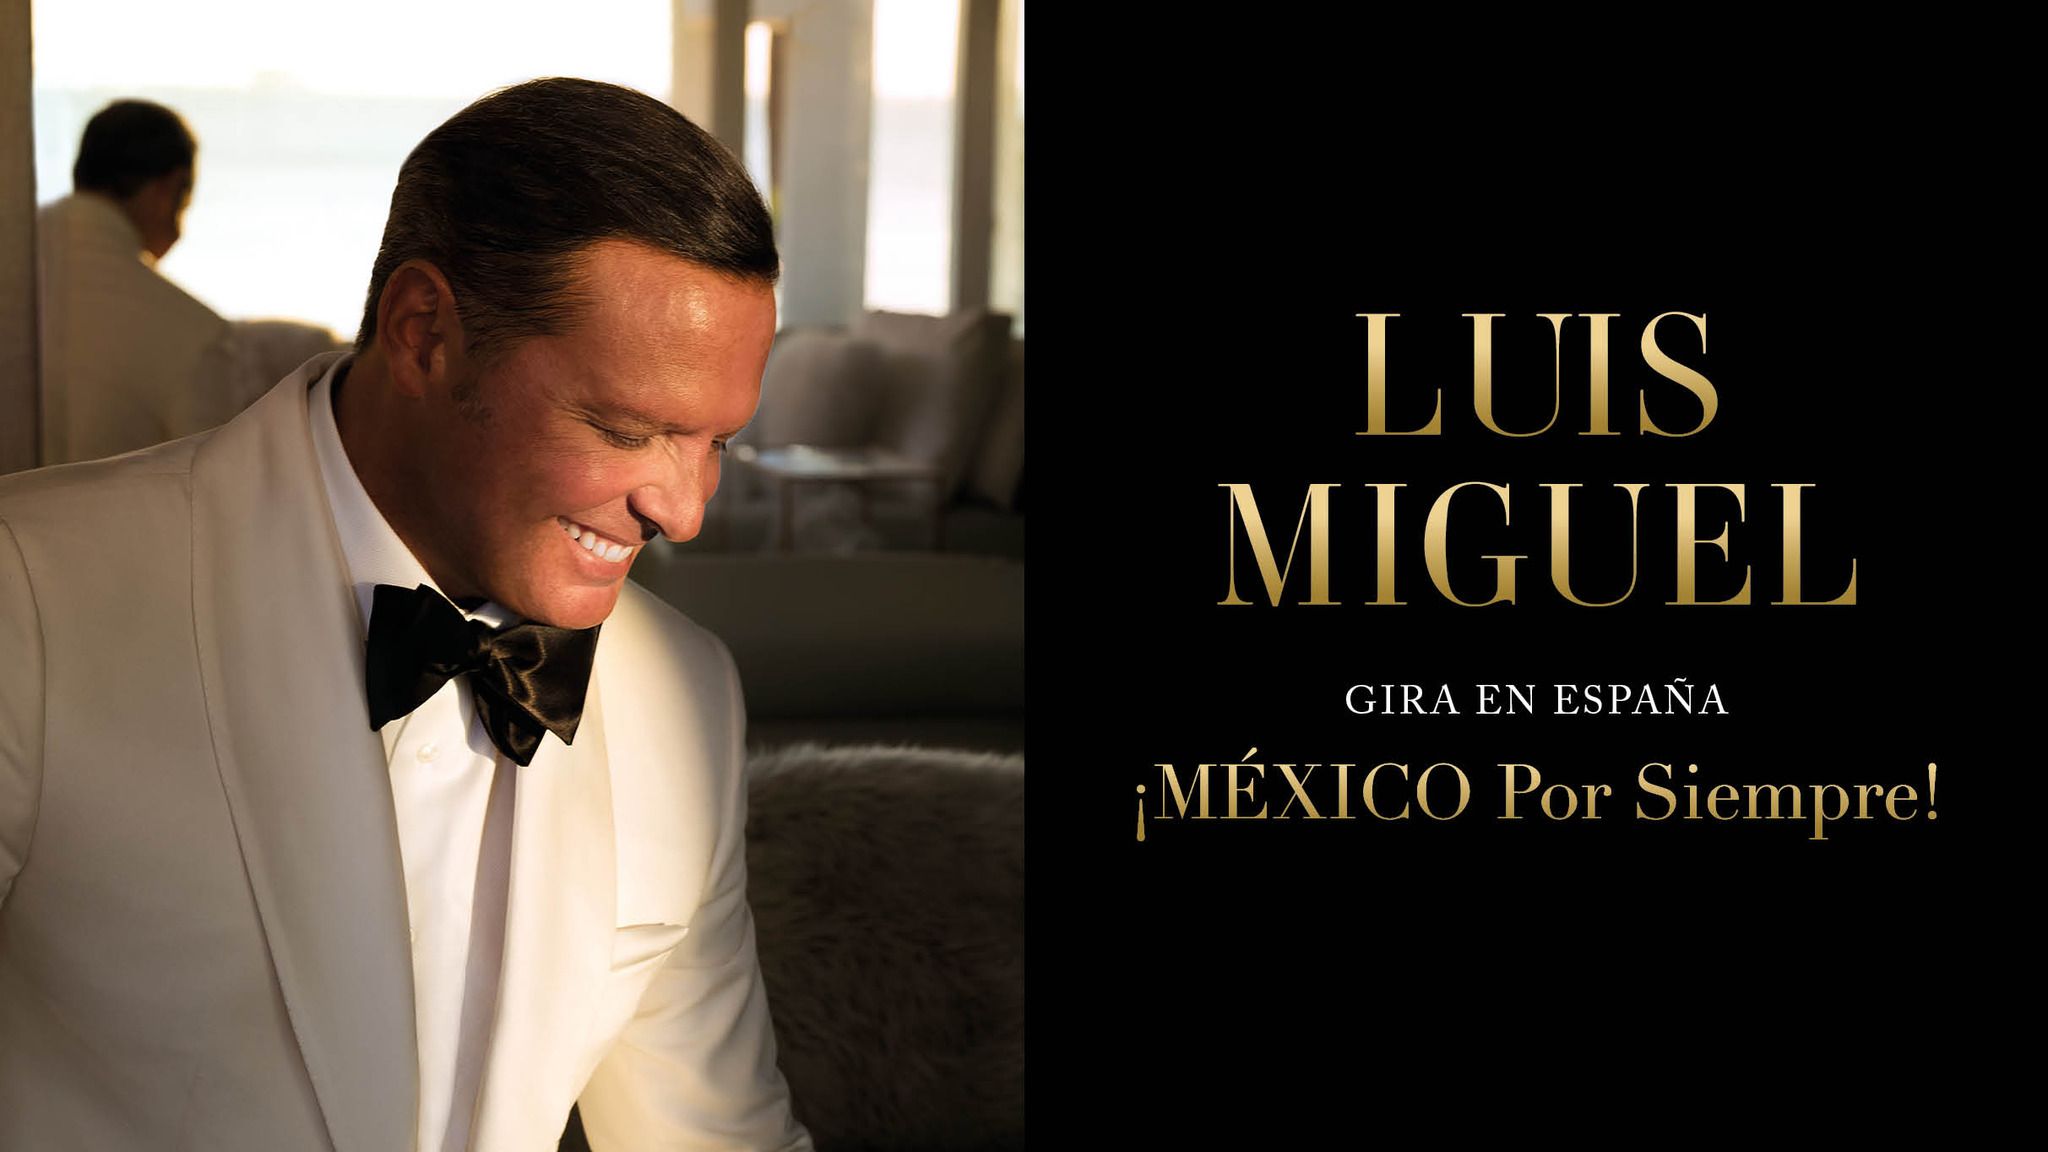 Luis Miguel at Auditorio Nacional, Mexico on 9 Oct 2018. Ticket